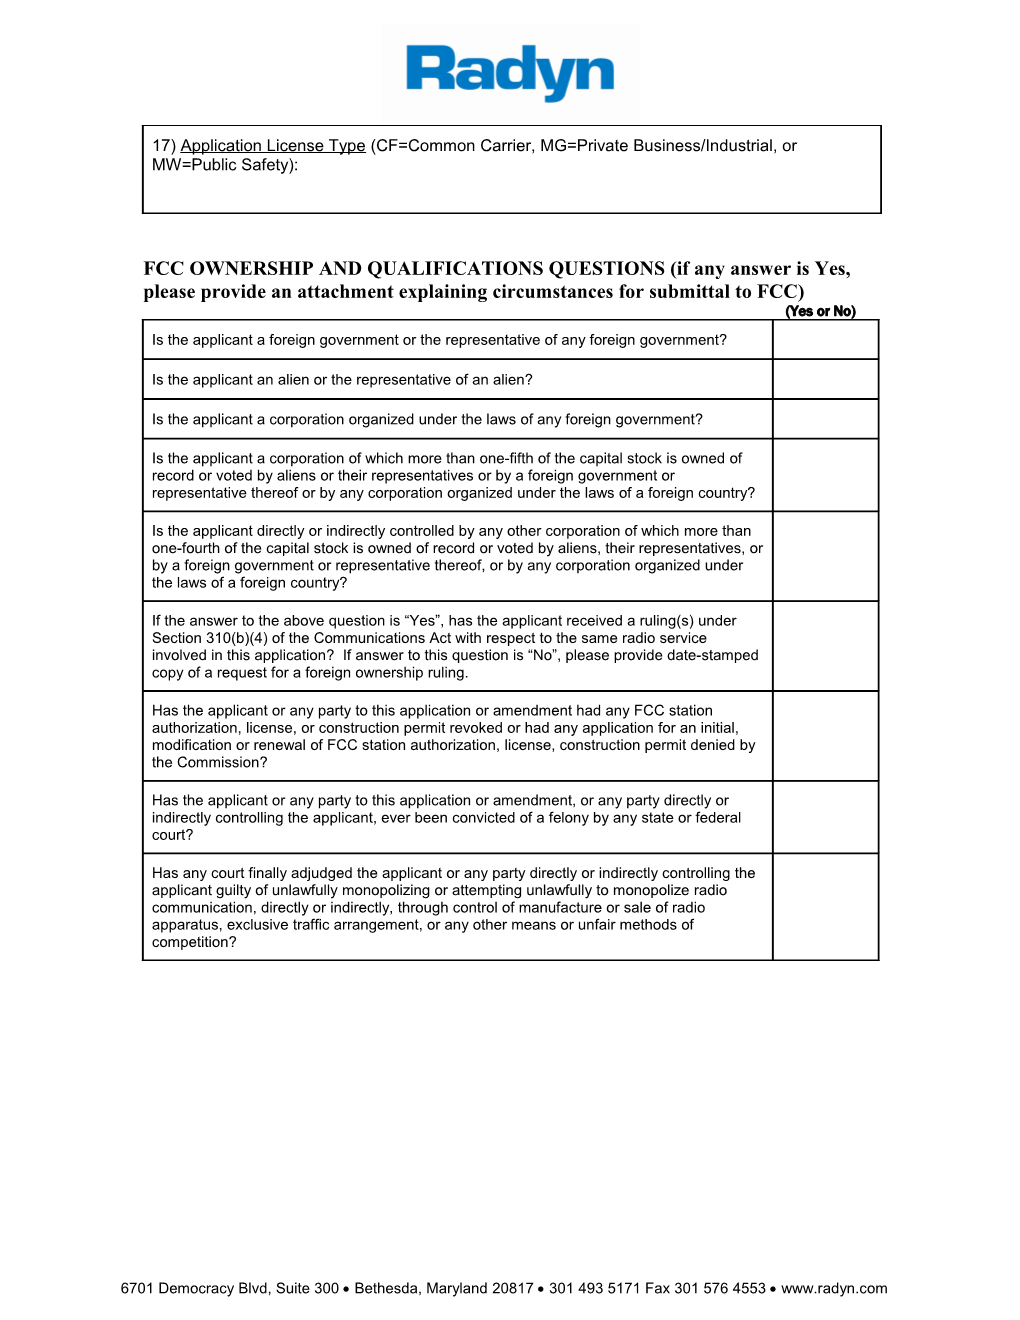 Fcc License Application Questionnaire